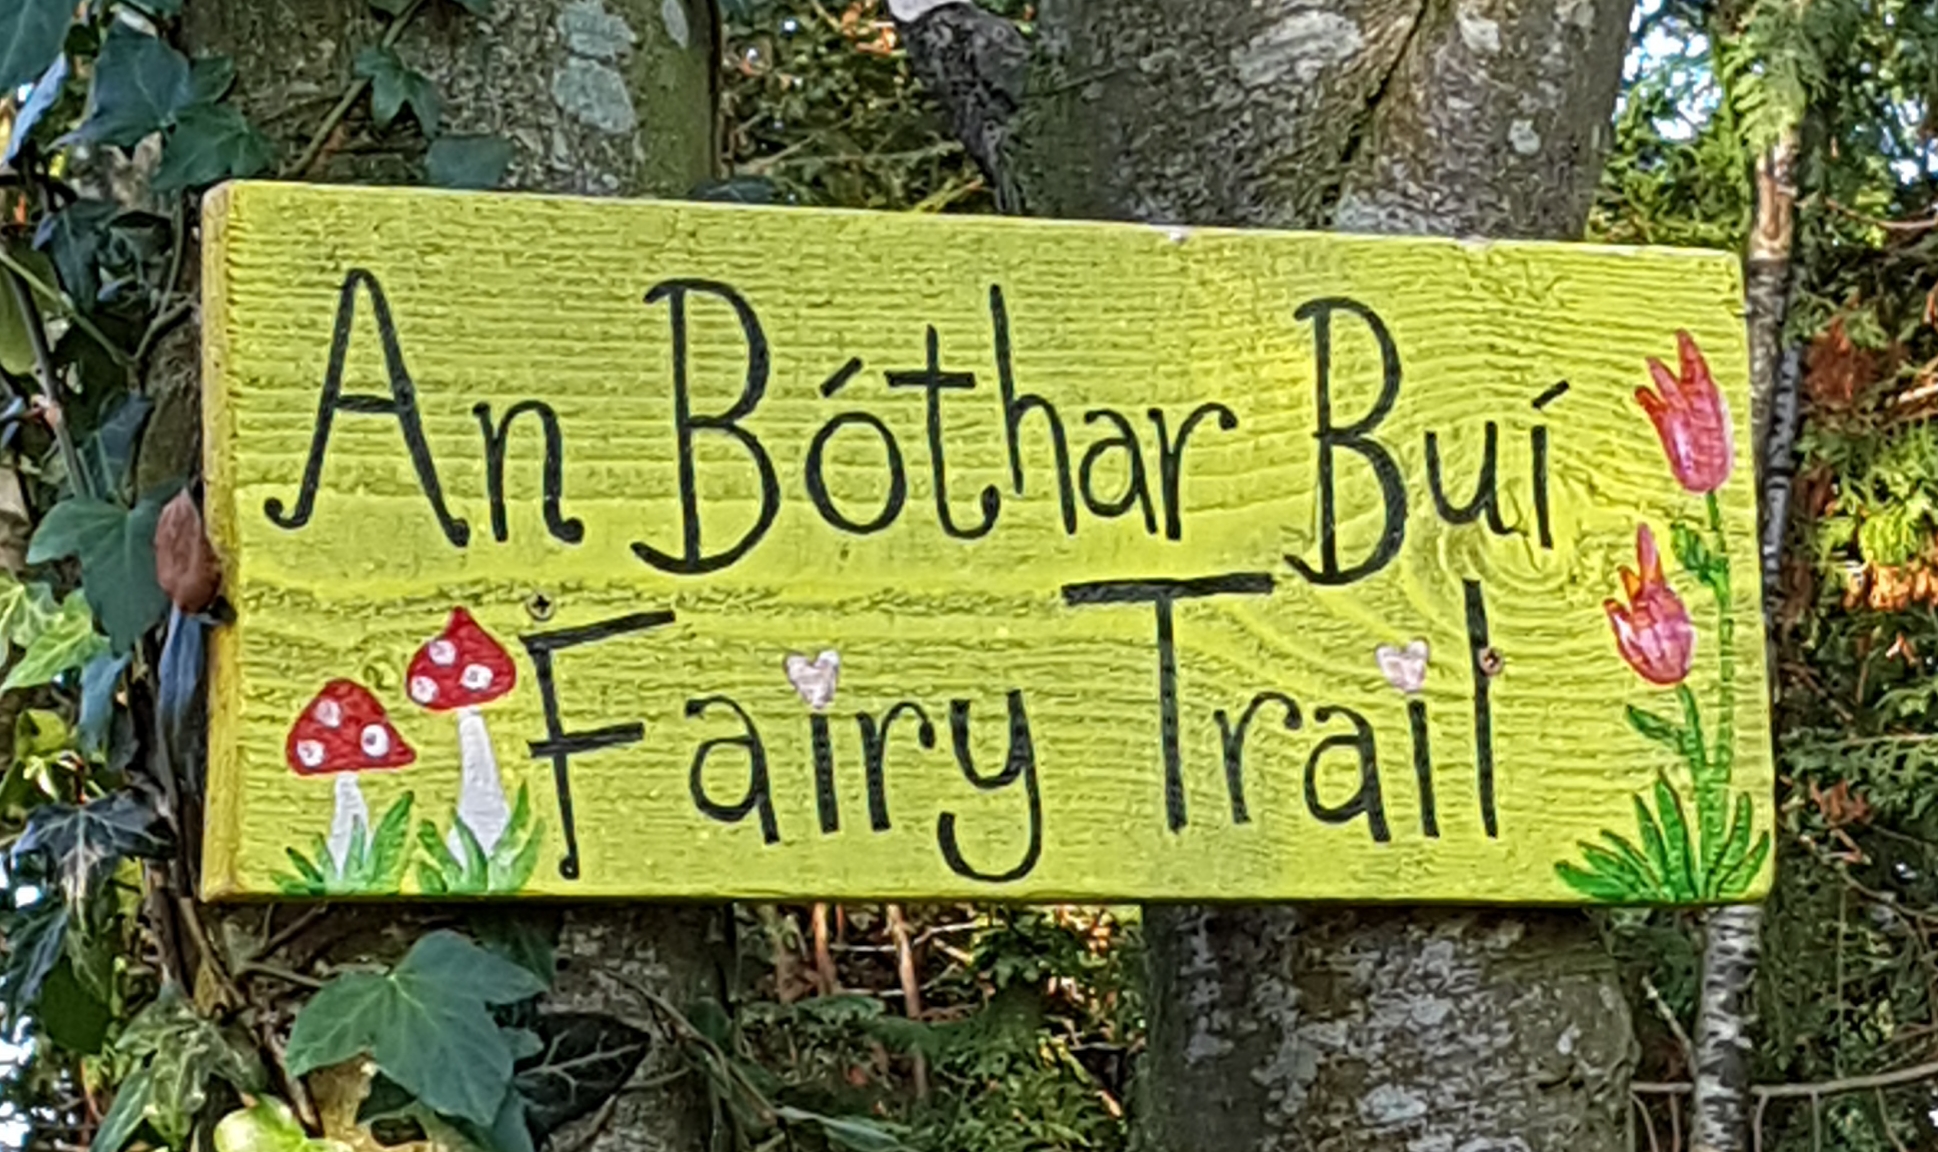 Enfield Fairy Trail